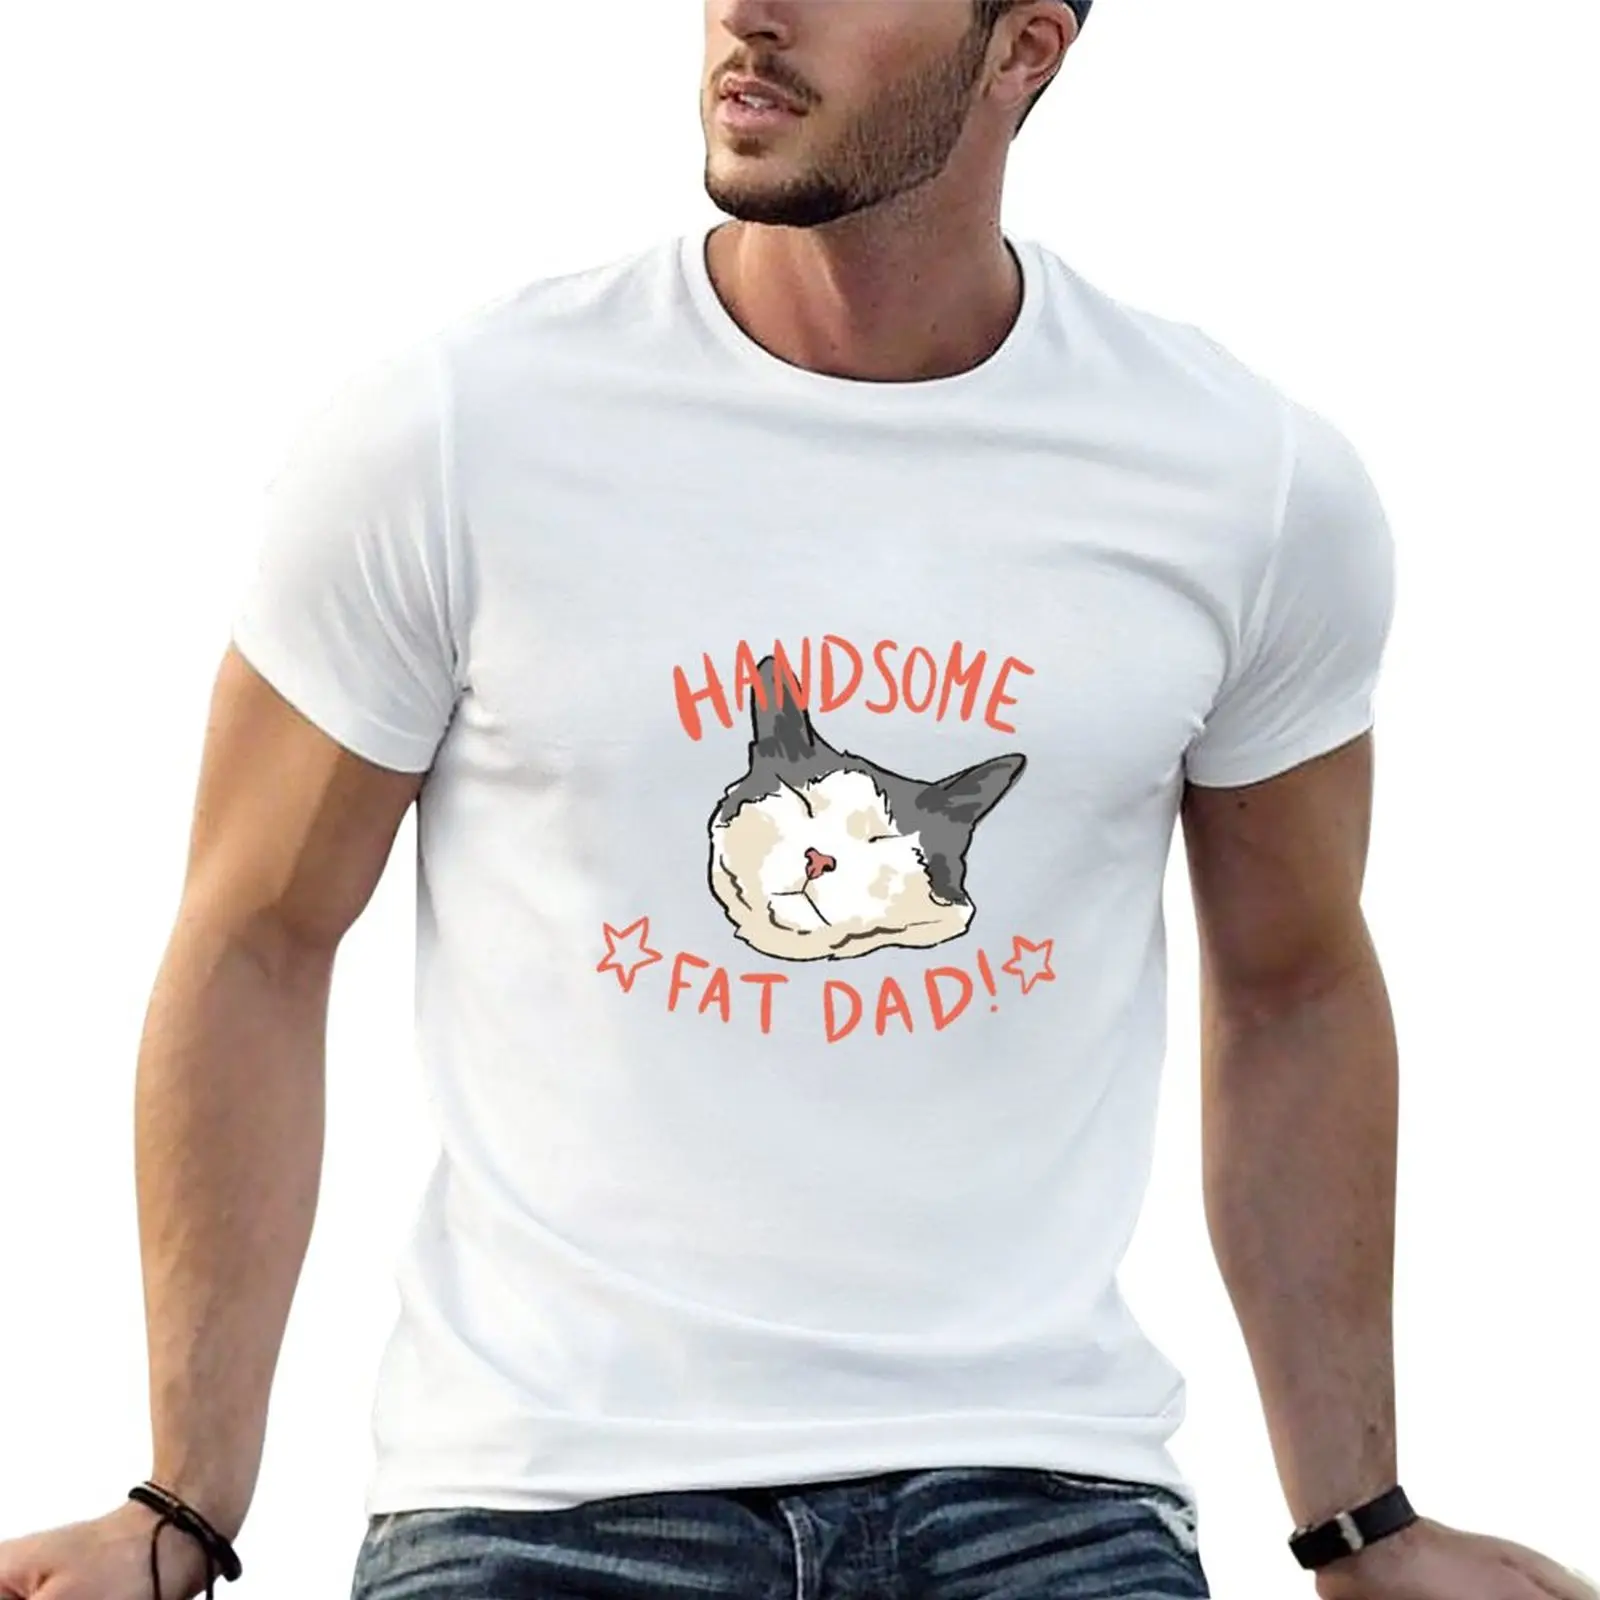 

Handsome Fat Dad Design T-Shirt heavyweight t shirts boys t shirts black t shirt fitted shirts for men